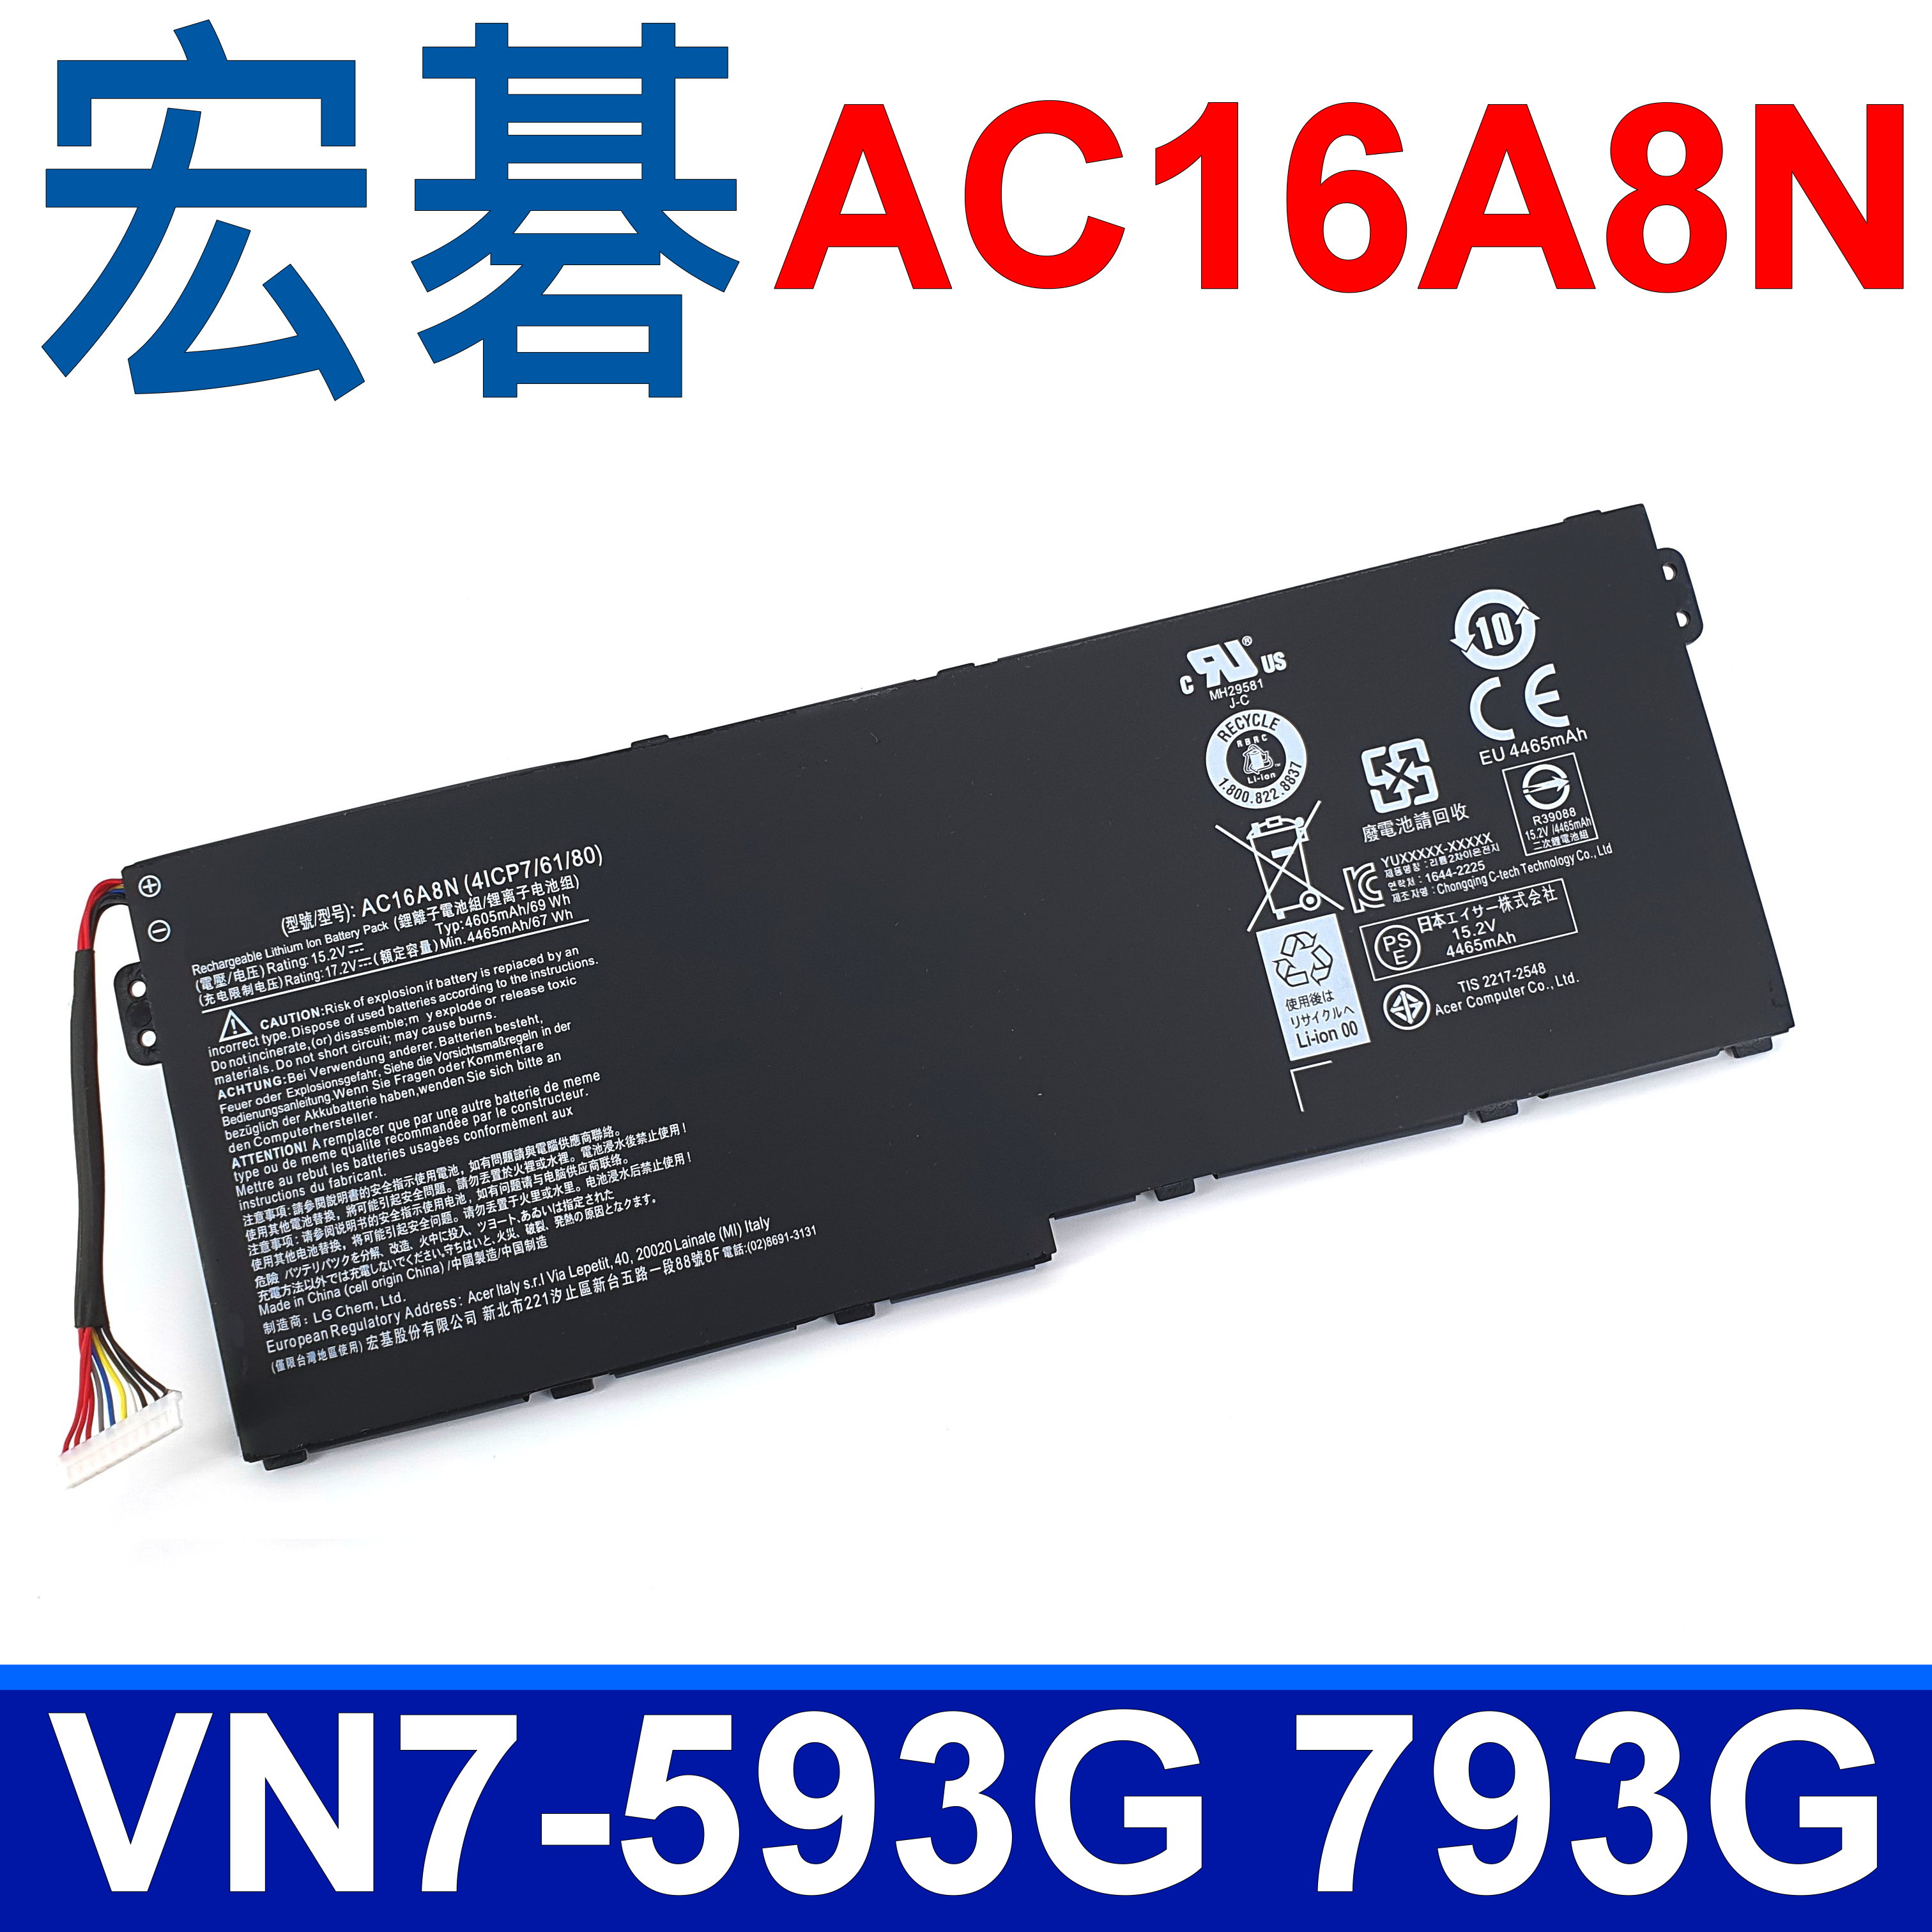 ACER 4芯 AC16A8N 日系 電芯 電池 AC16A8N 4ICP7/61/80 ACER Aspire V15 V17 VN7-593G VN7-793G